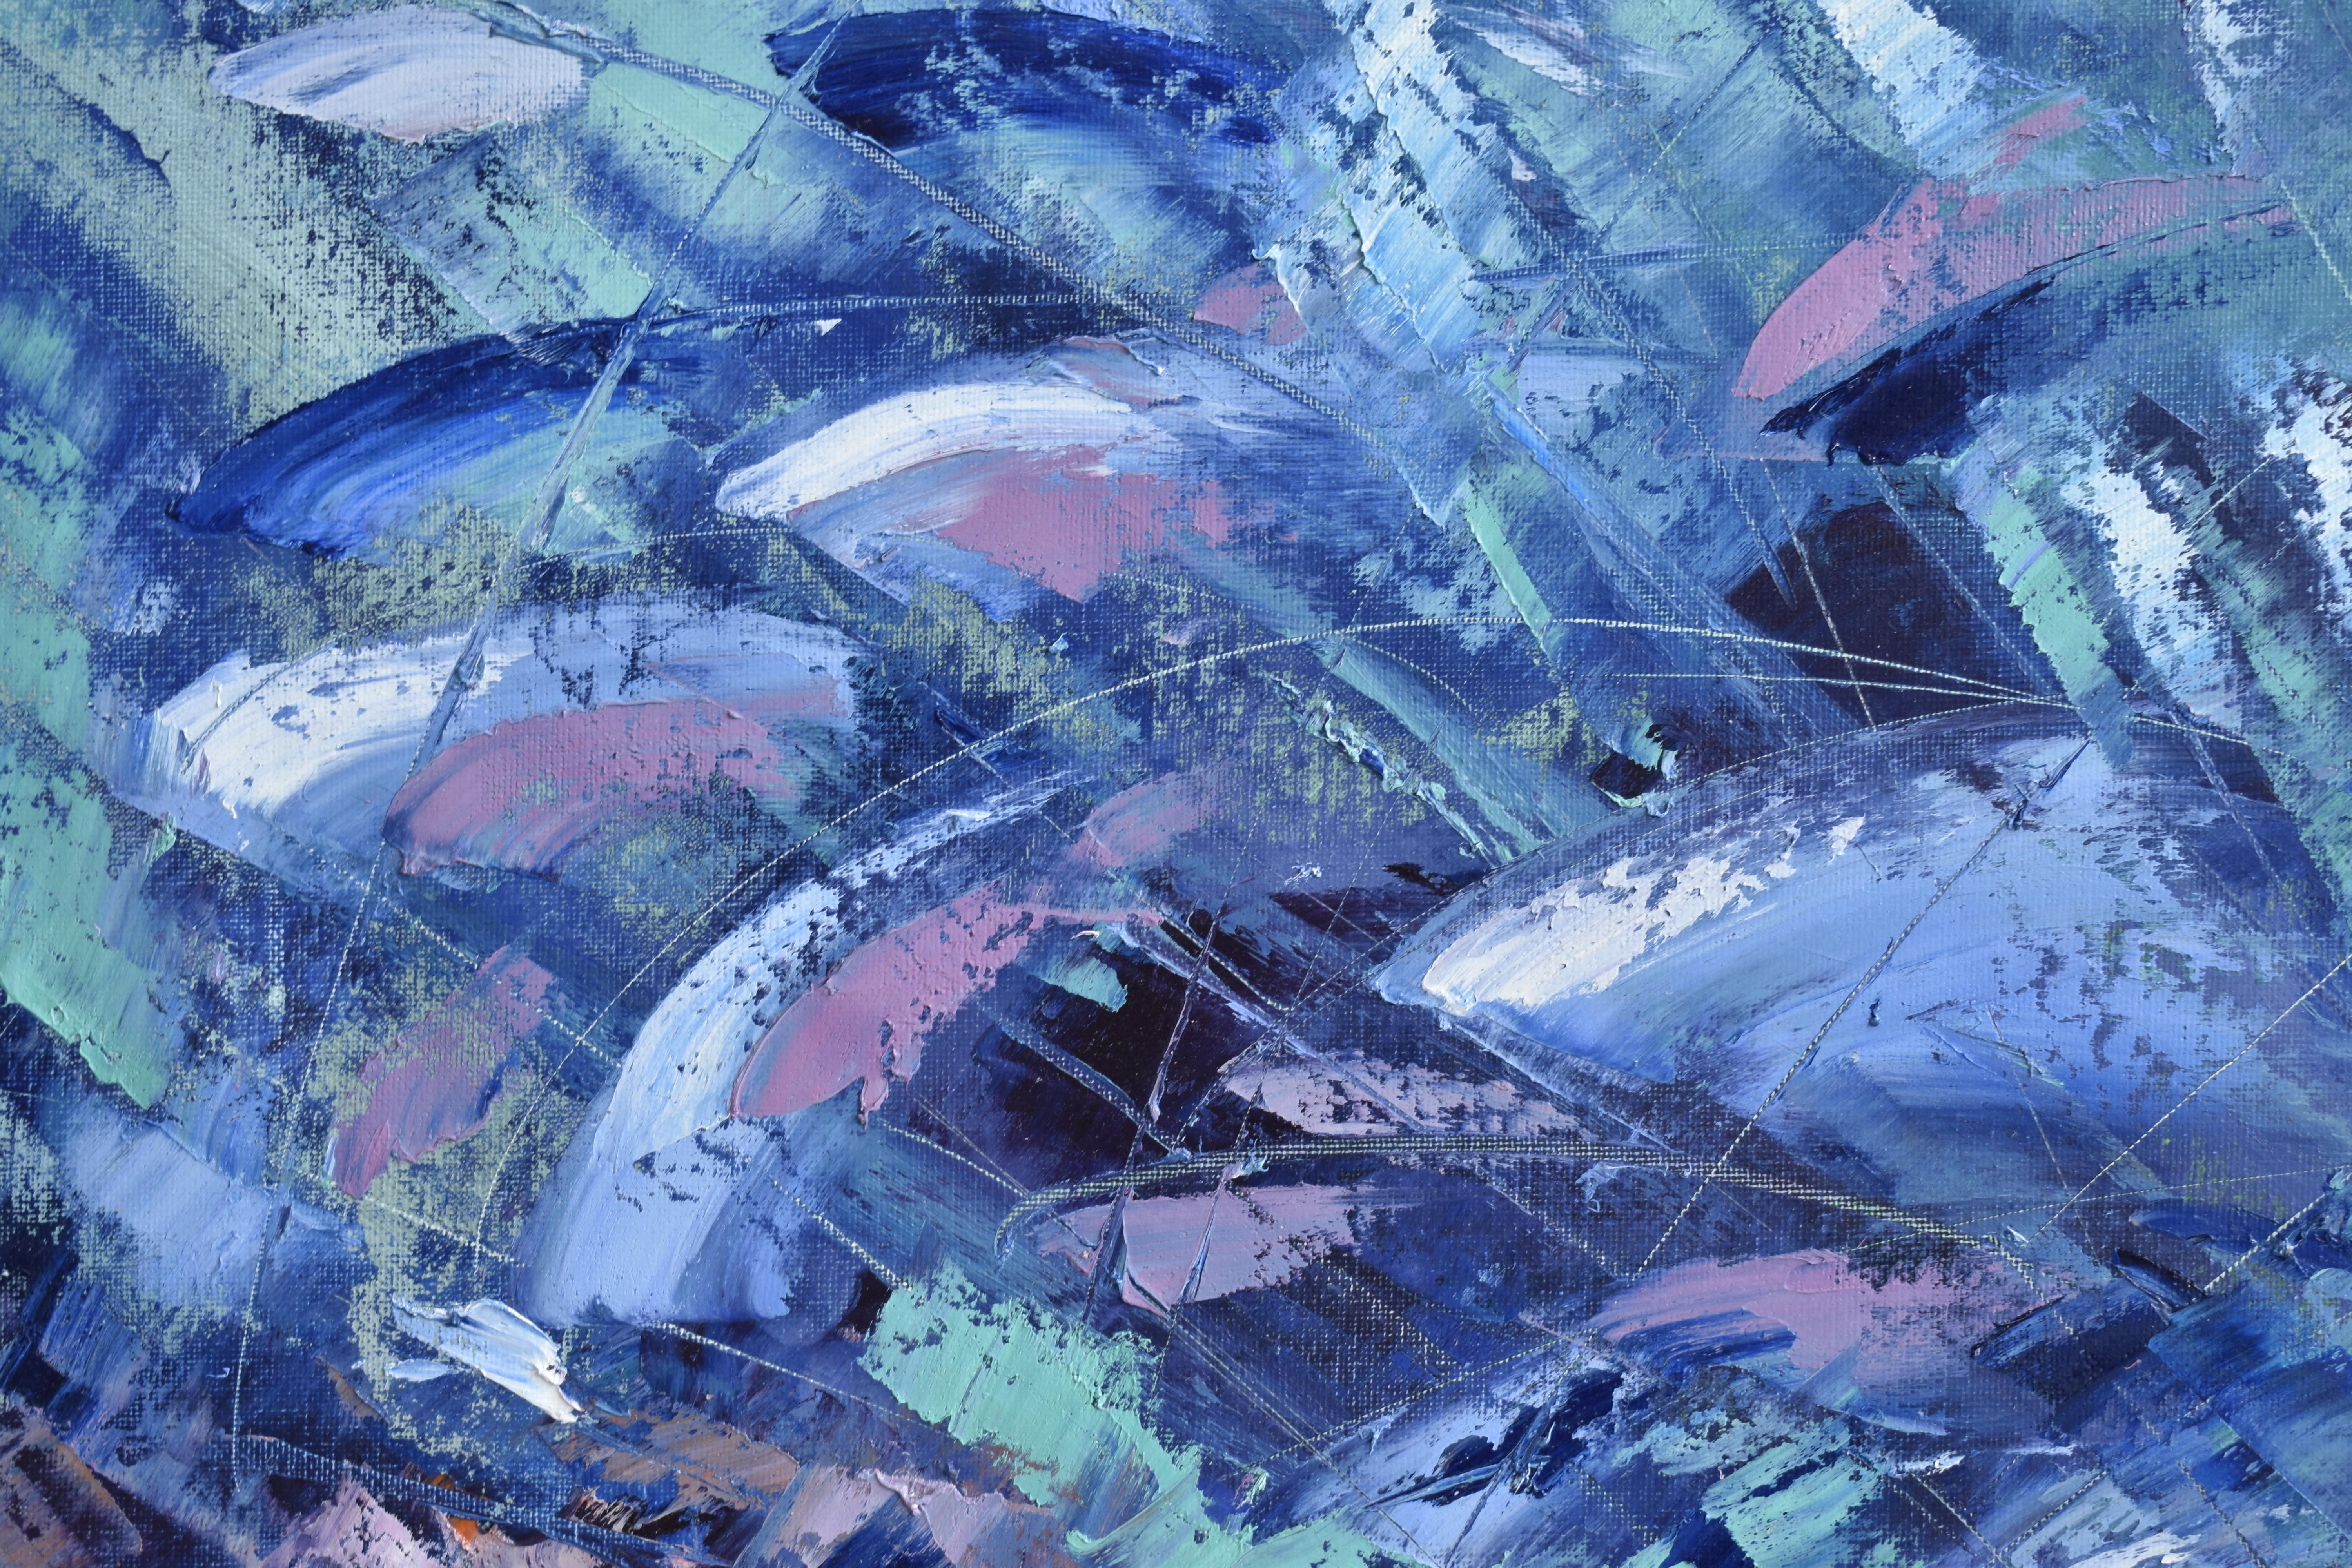 Unterwassermalerei - eine neue, schnell wachsende Richtung in der zeitgenössischen Kunst. Das Kunstwerk entstand unter Wasser während eines Tauchgangs in 11,5 Metern Tiefe, der 74 Minuten dauerte. Durch den Einfluss der Unterwasserwelt, das Gefühl